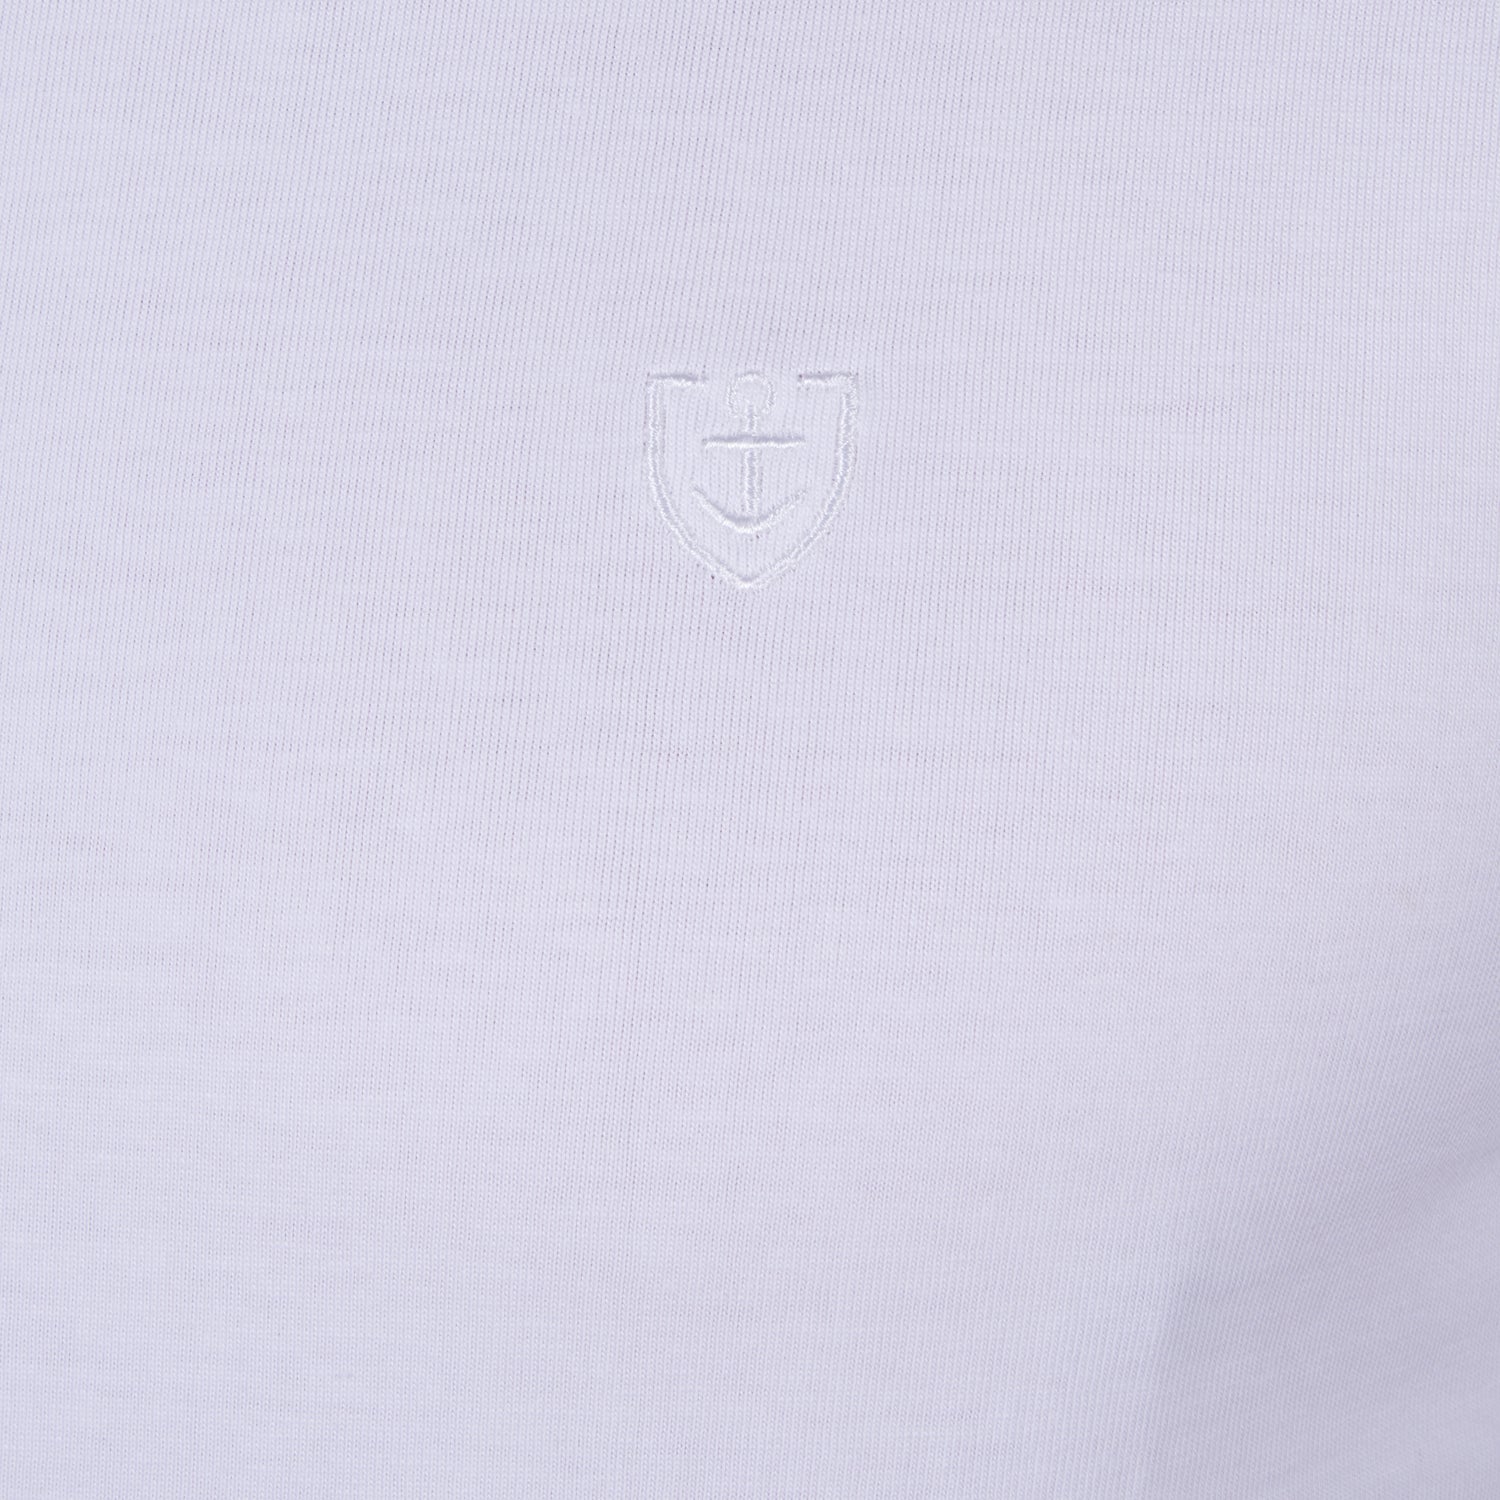 T-shirt en Jersey de Pur Coton Peigné BLANC